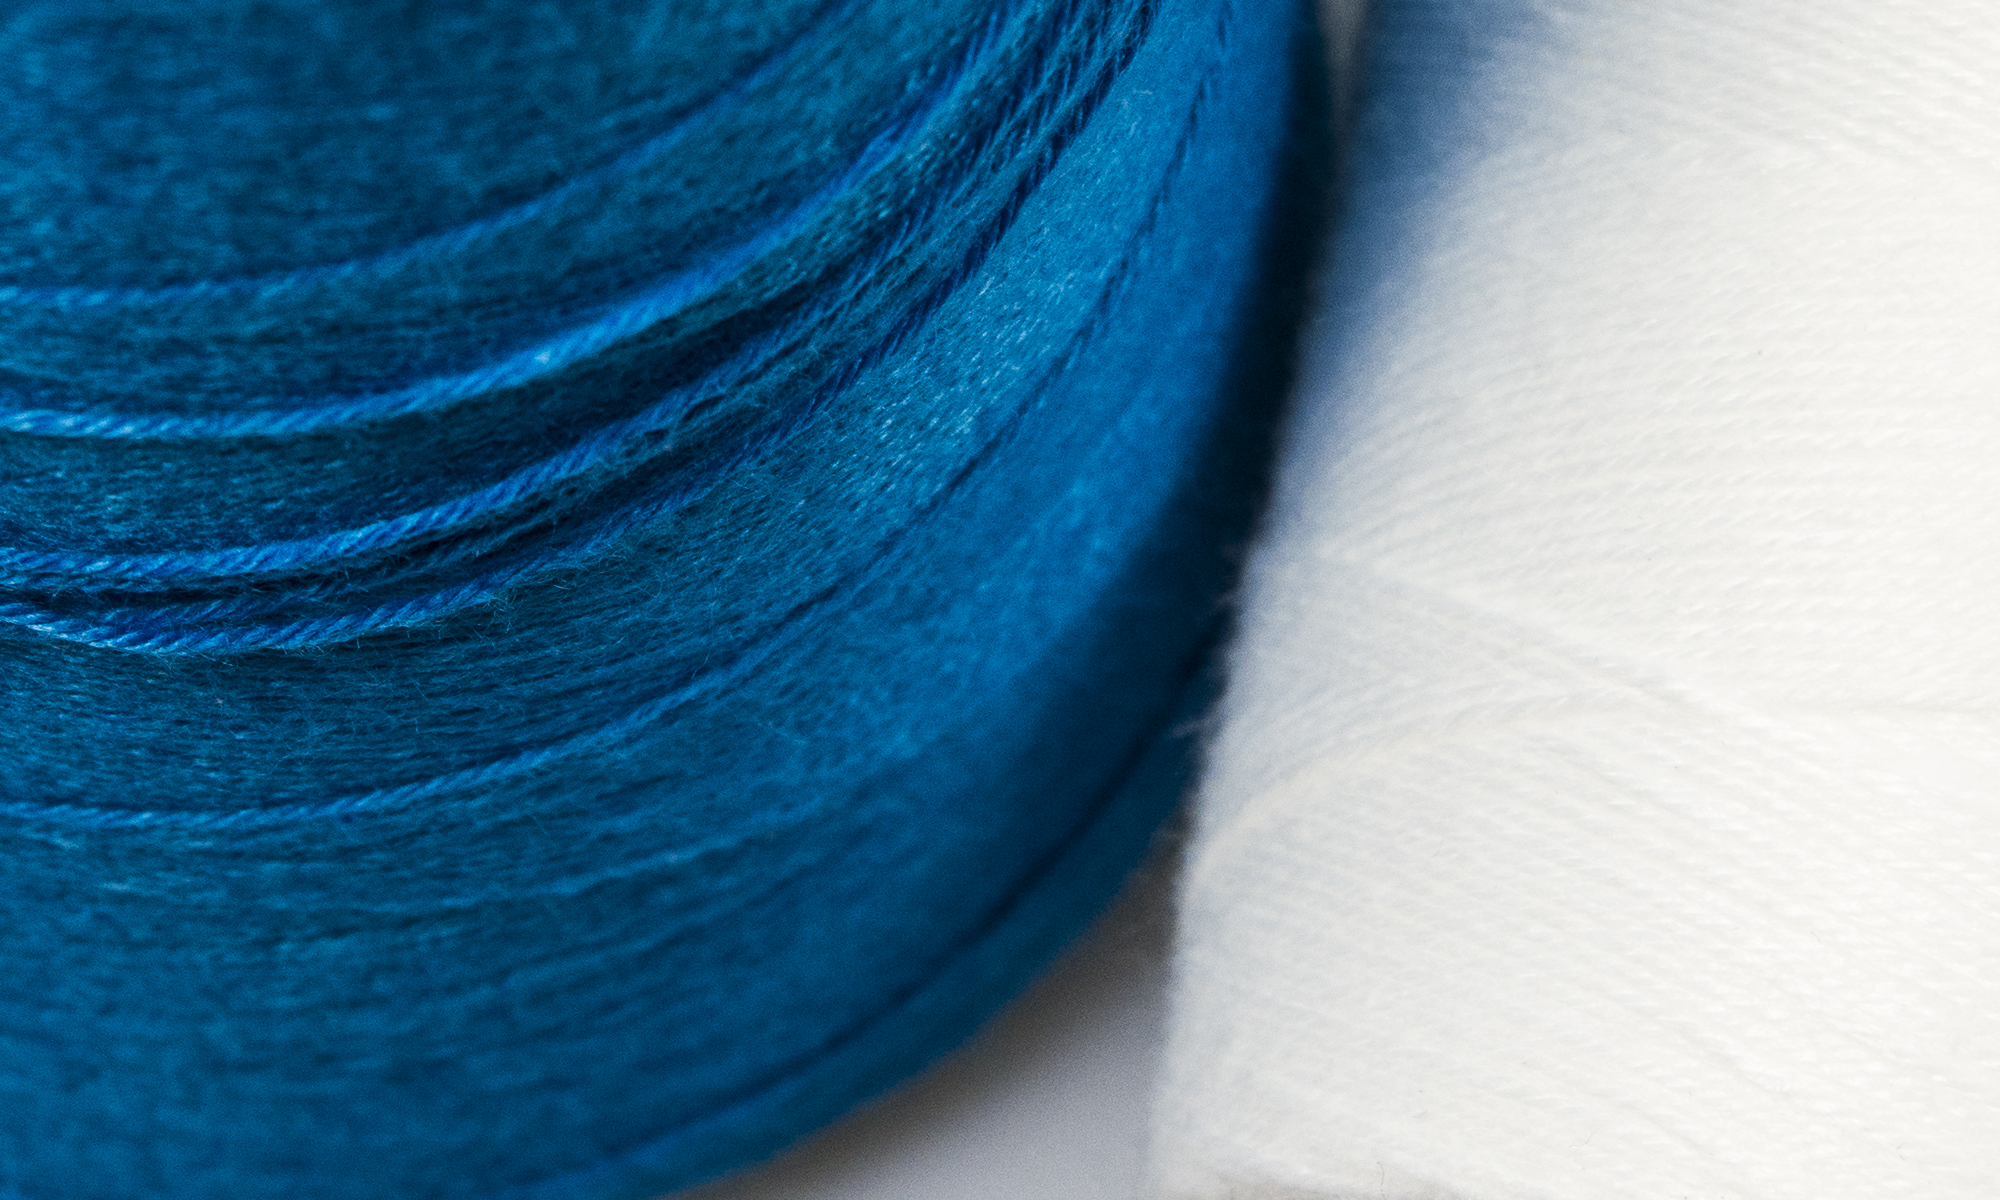 bag sewing thread / Nikol Weber twisting mill